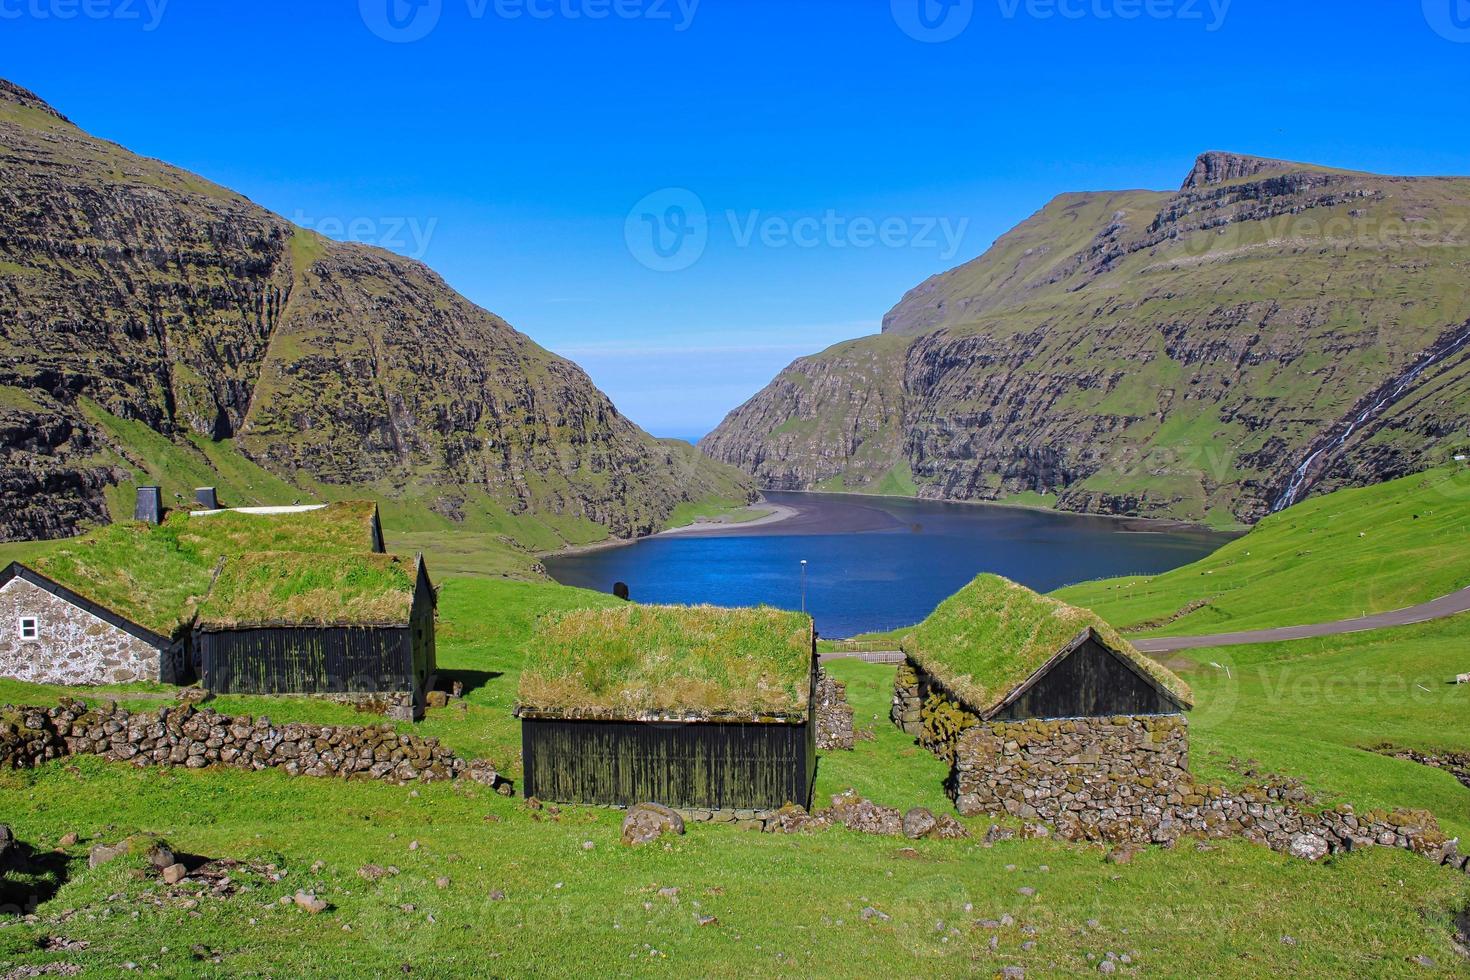 a vila histórica de Sakun nas ilhas Faroe em um ótimo dia com céu azul no verão foto